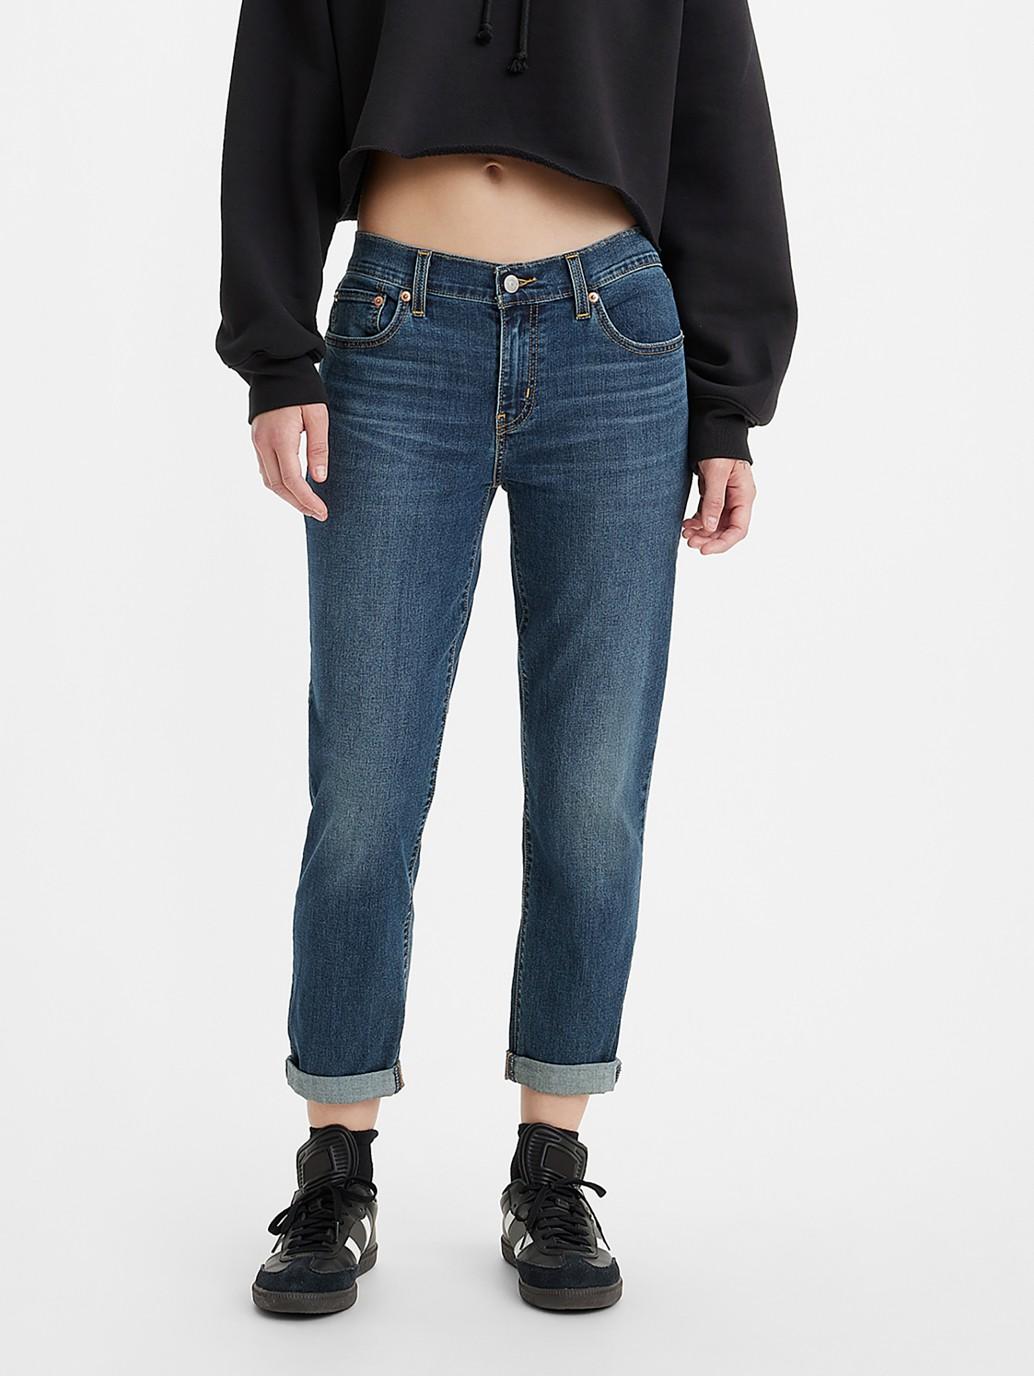 Levi's® Women's Mid-Rise Boyfriend Jeans | Levi's® Official Online Store SG